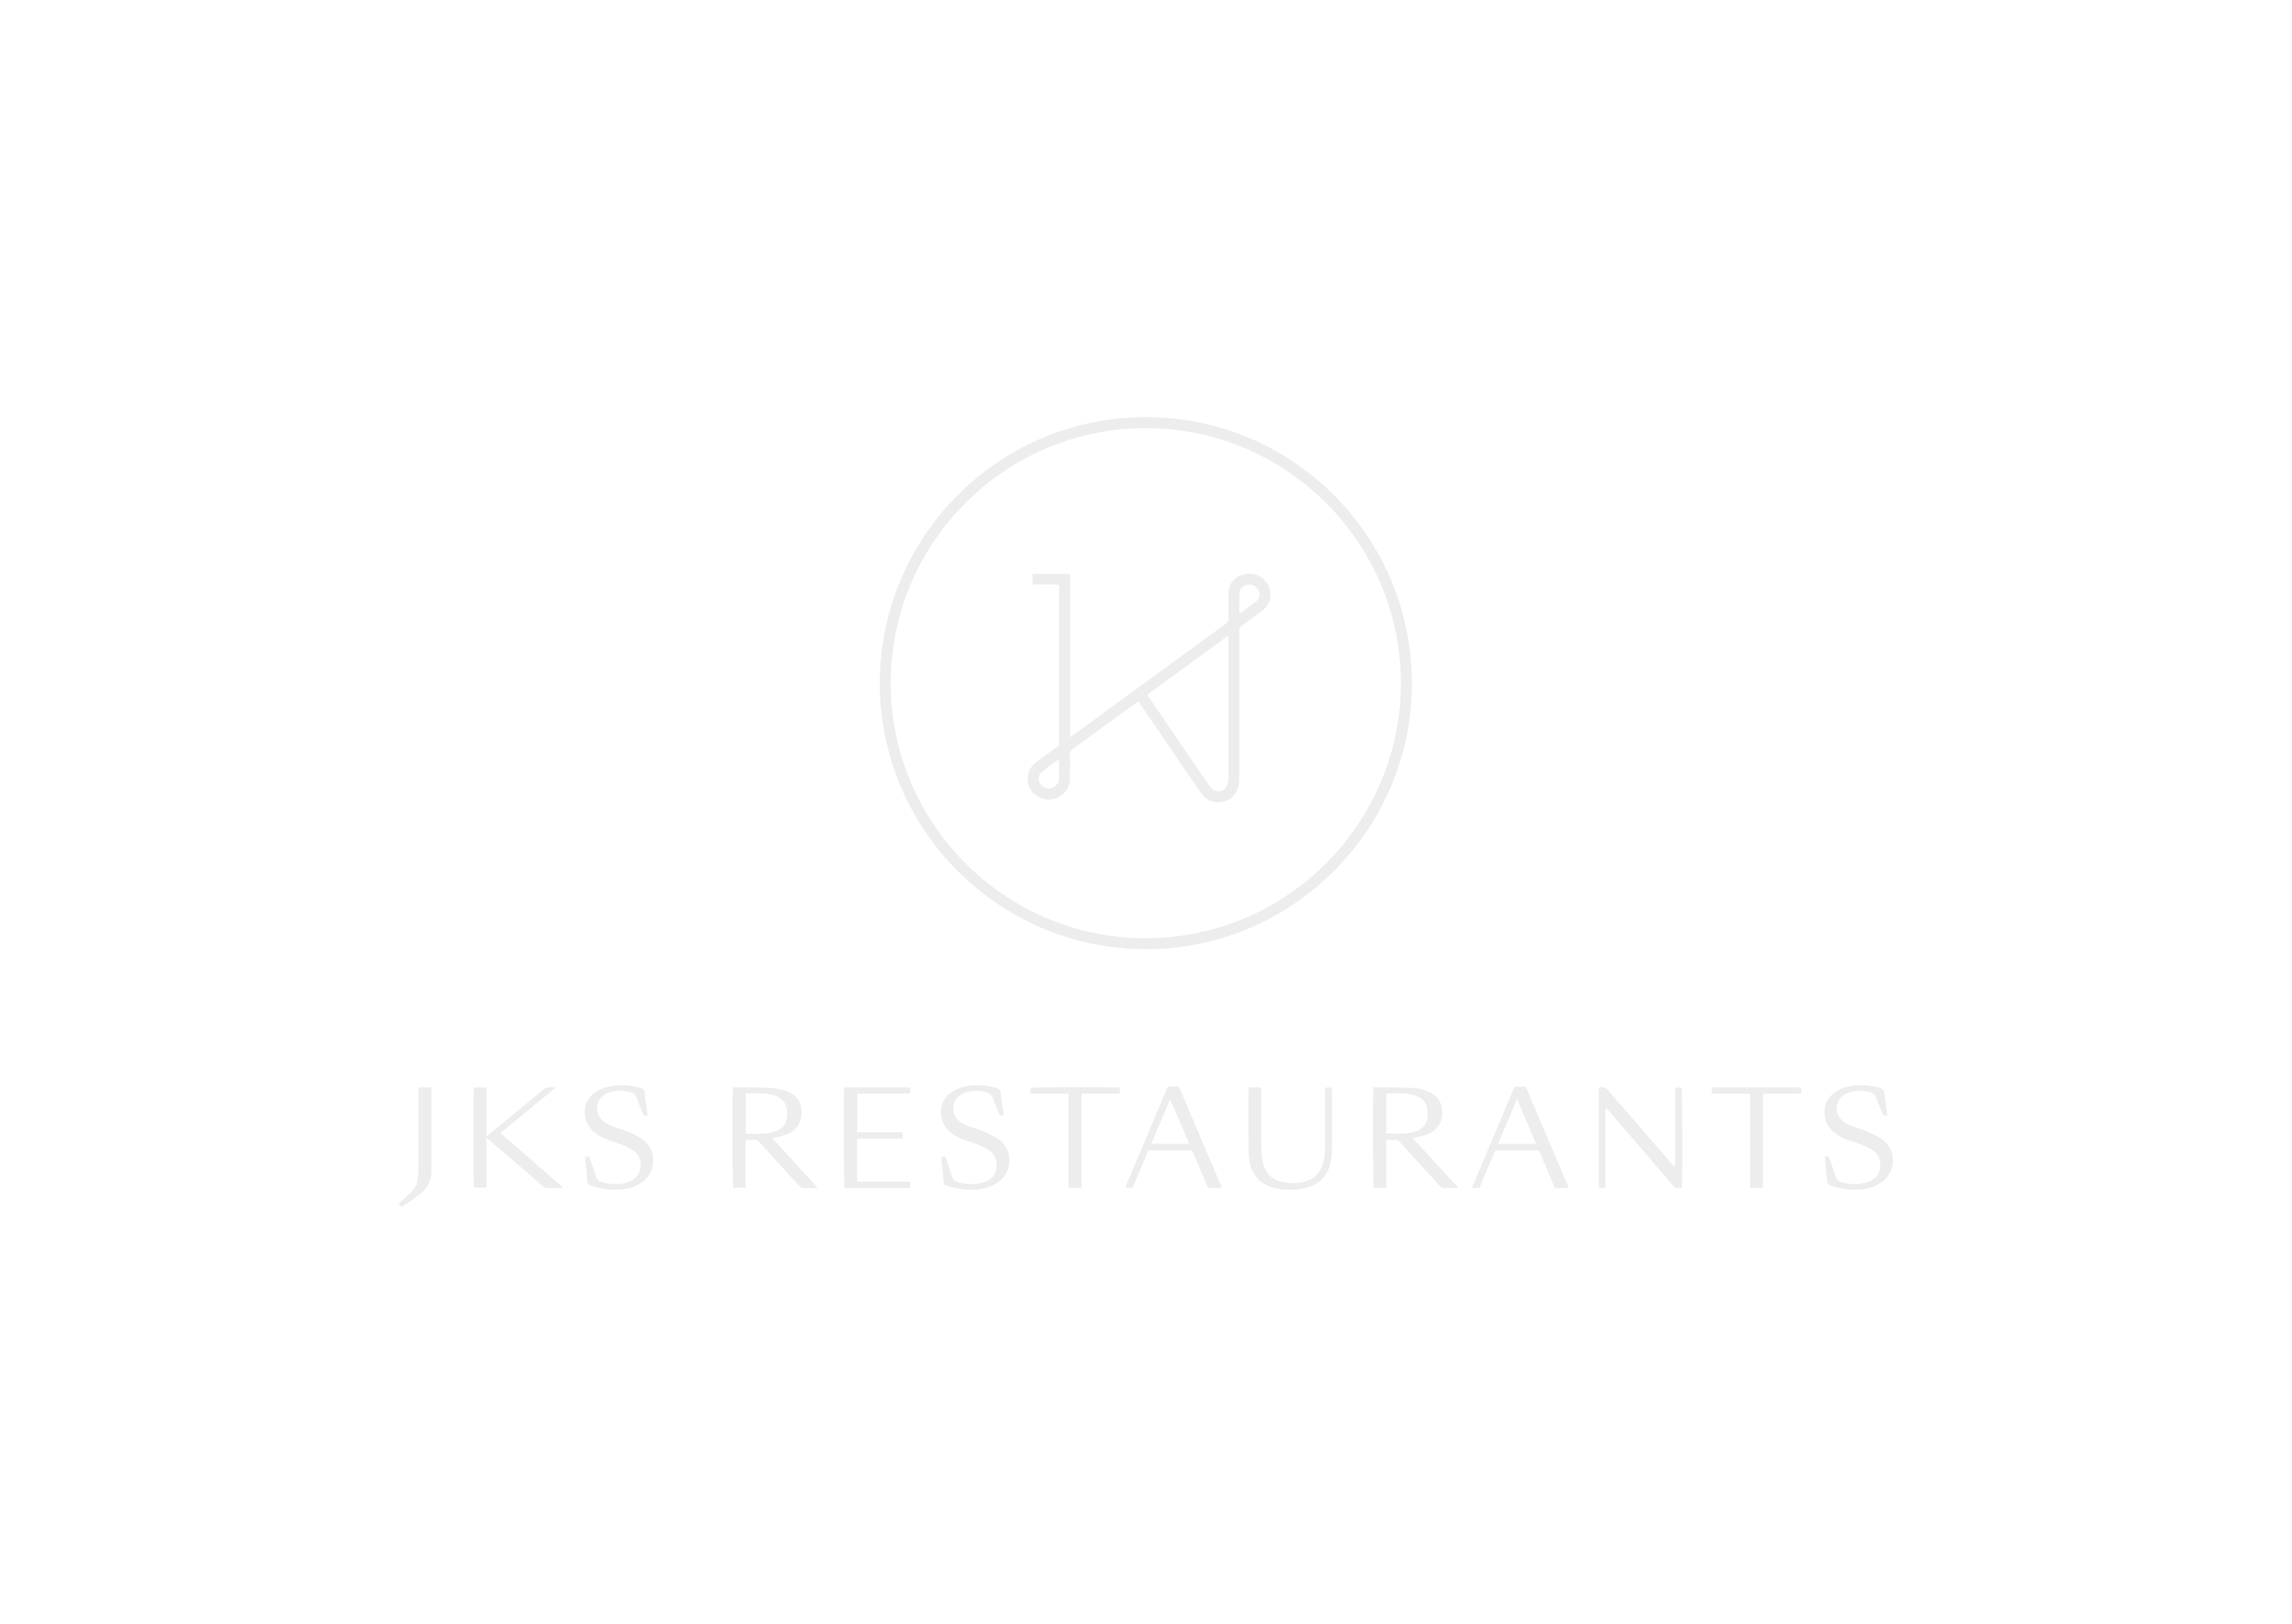 In Kind Auction Sponsors JKS Restaurants